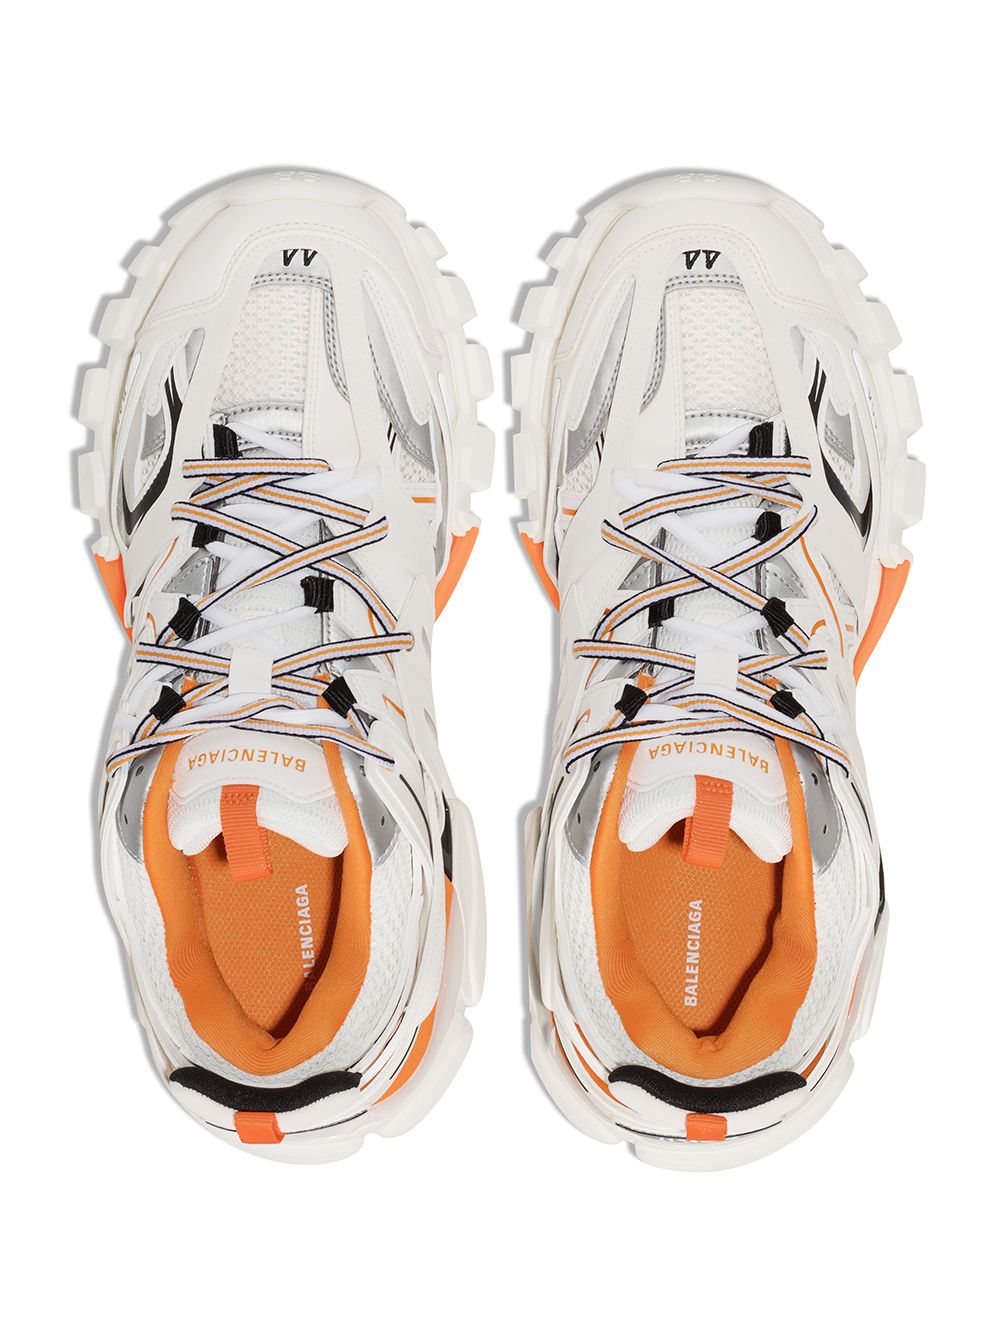 Giày Balenciaga Wmns Track Trainer White Orange  Giày Thể Thao  Giày  Khủng Bố  Hải Phòng Sneaker